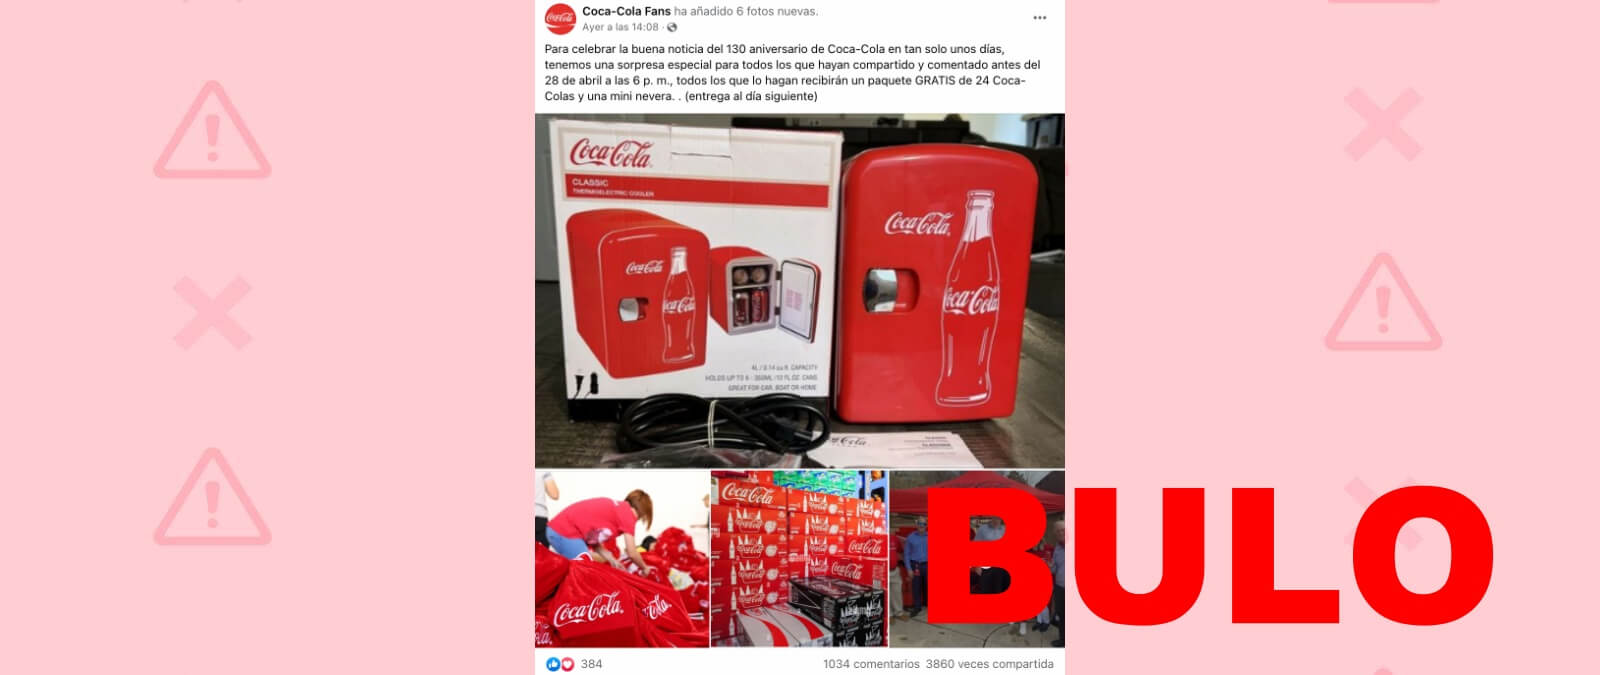 Coca-Cola no está regalando una mini nevera en WhatsApp: es una